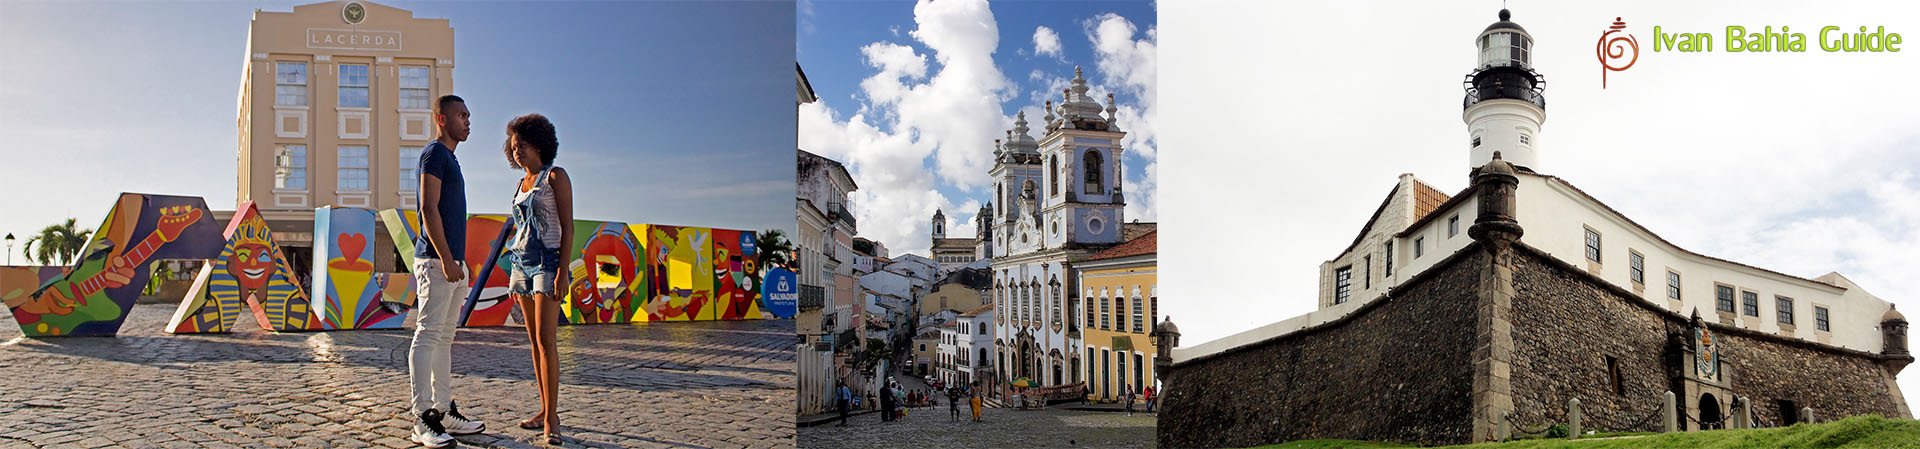 Ivan Bahia Guide, visitez Salvador da Bahia (première capitale du Brésil) culture, architecture et culinaire